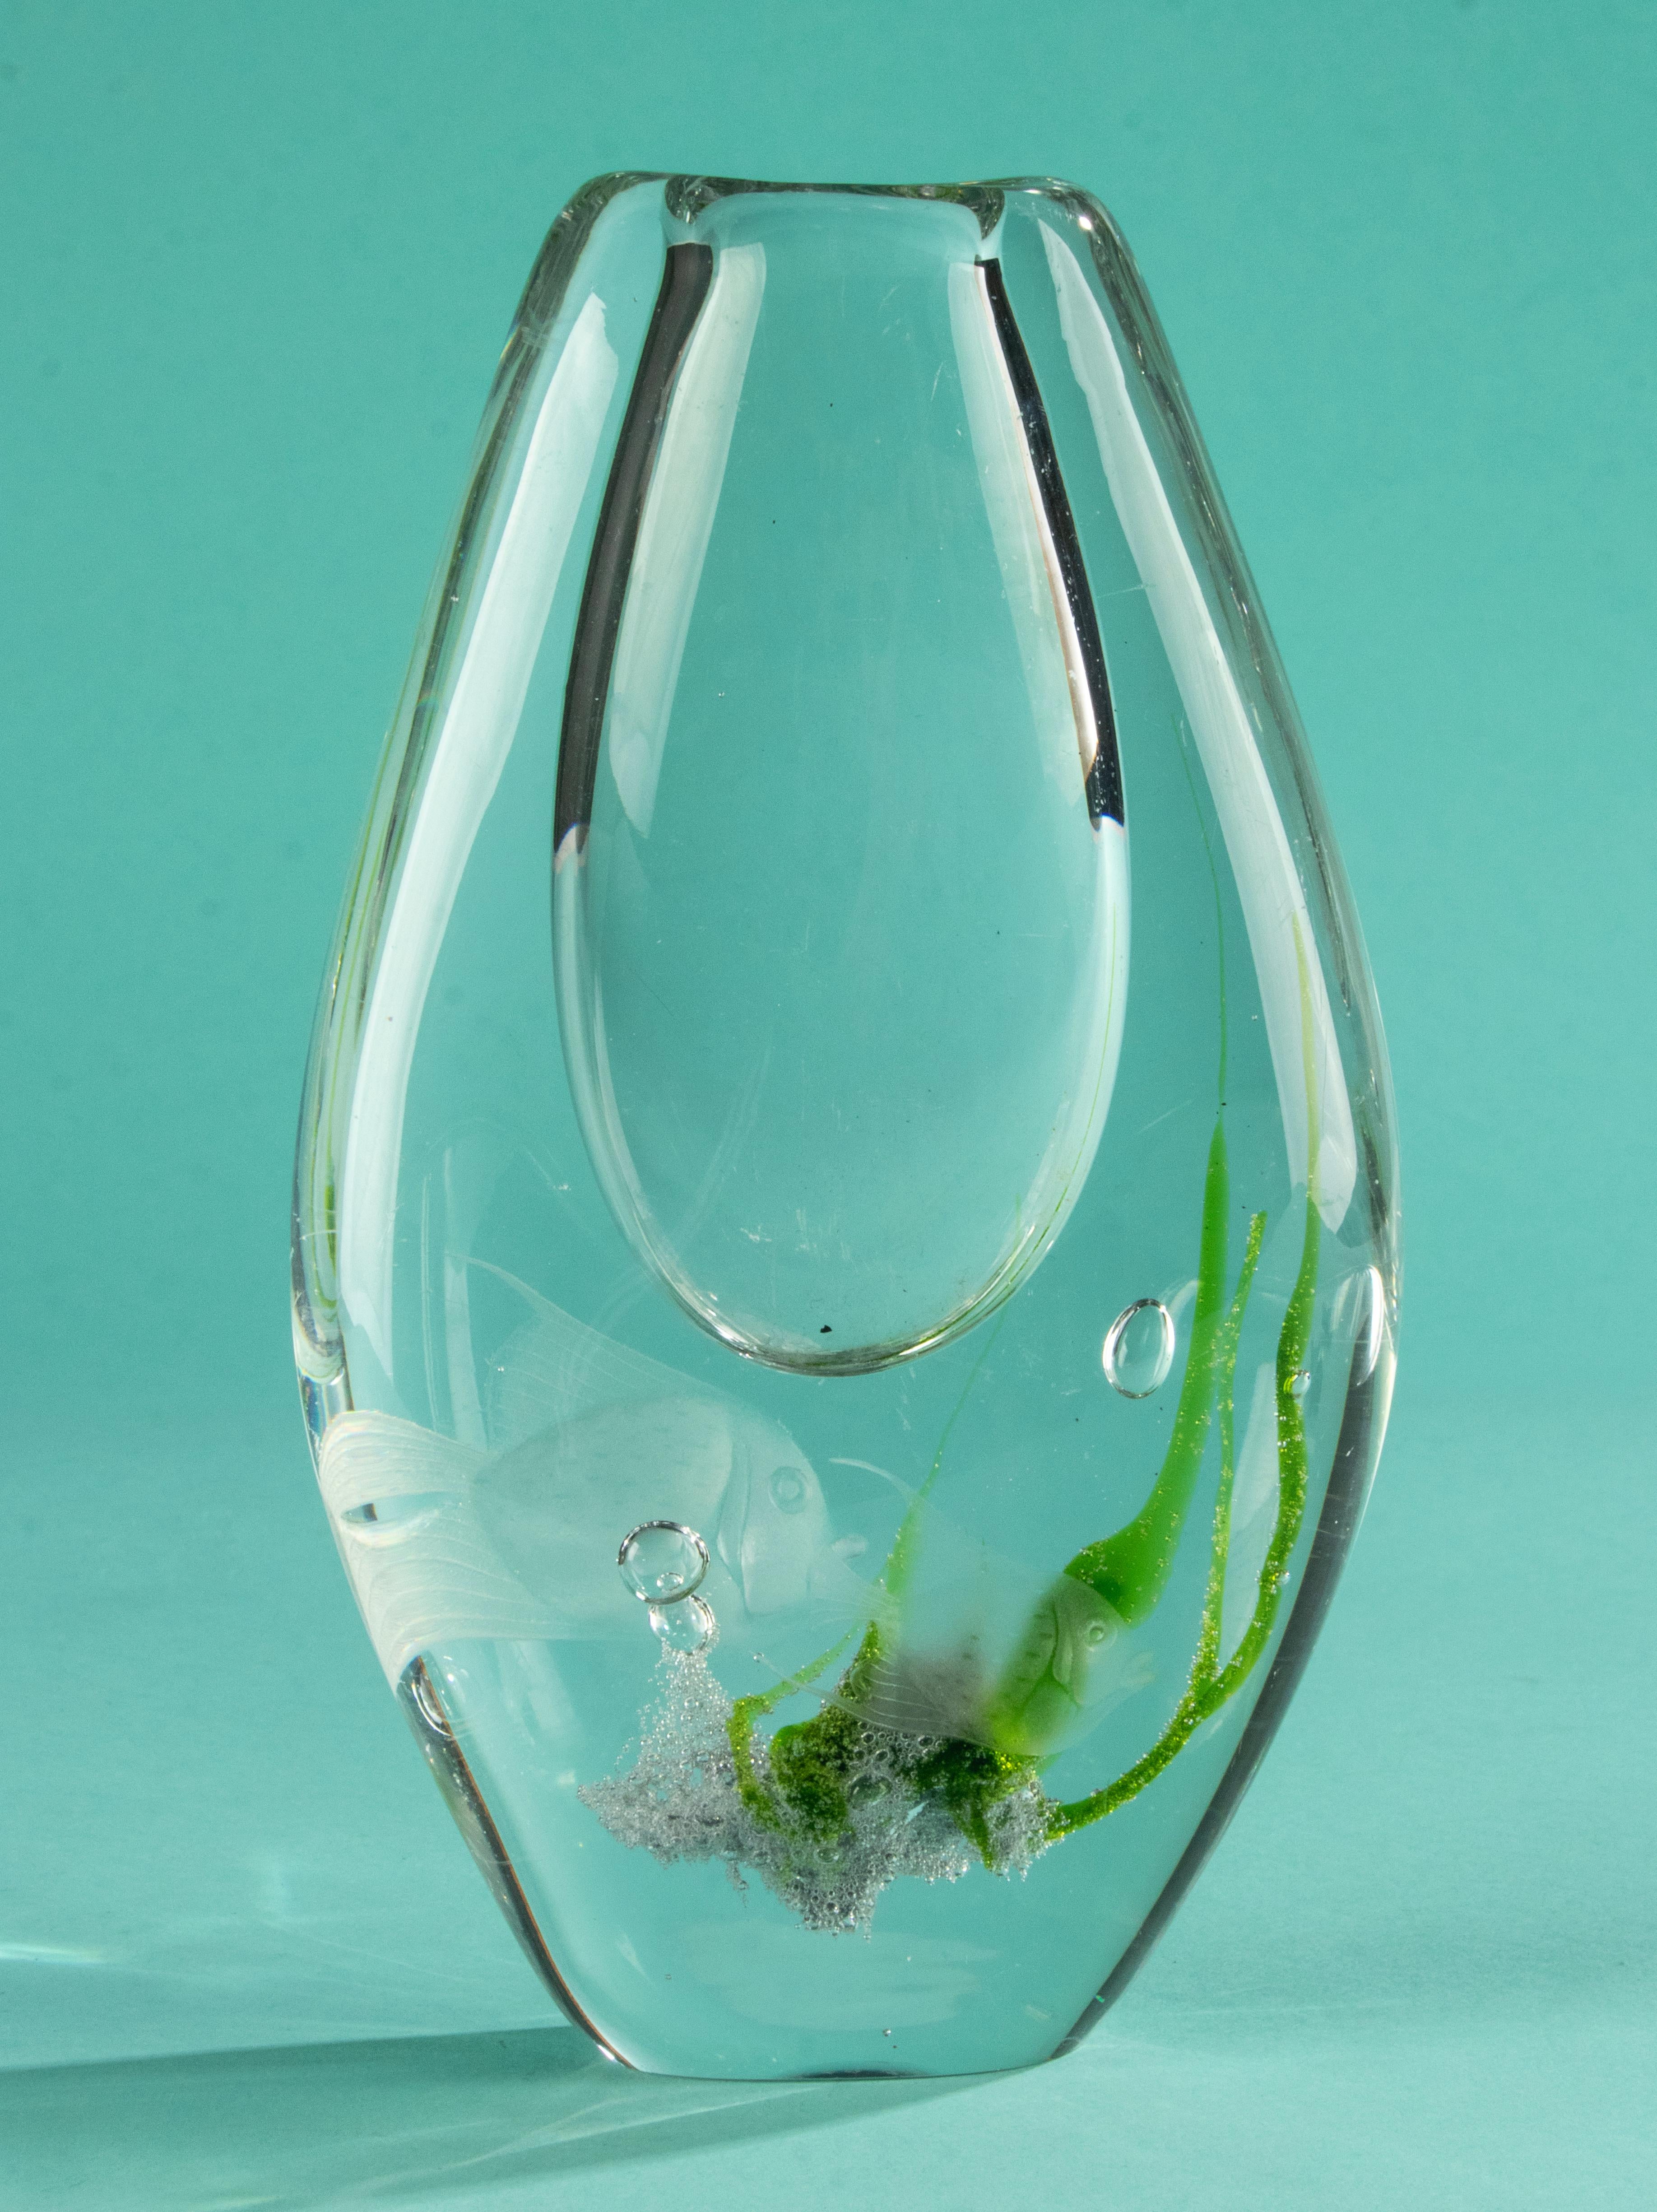 Un magnifique vase en verre d'art, fabriqué par la marque suédoise Kosta soda, conçu par Vicke Lindstrand. 
Le vase est fait d'épaisses couches de verre avec des inclusions vertes claires et des poissons gravés sur les deux côtés. 
Le vase est en